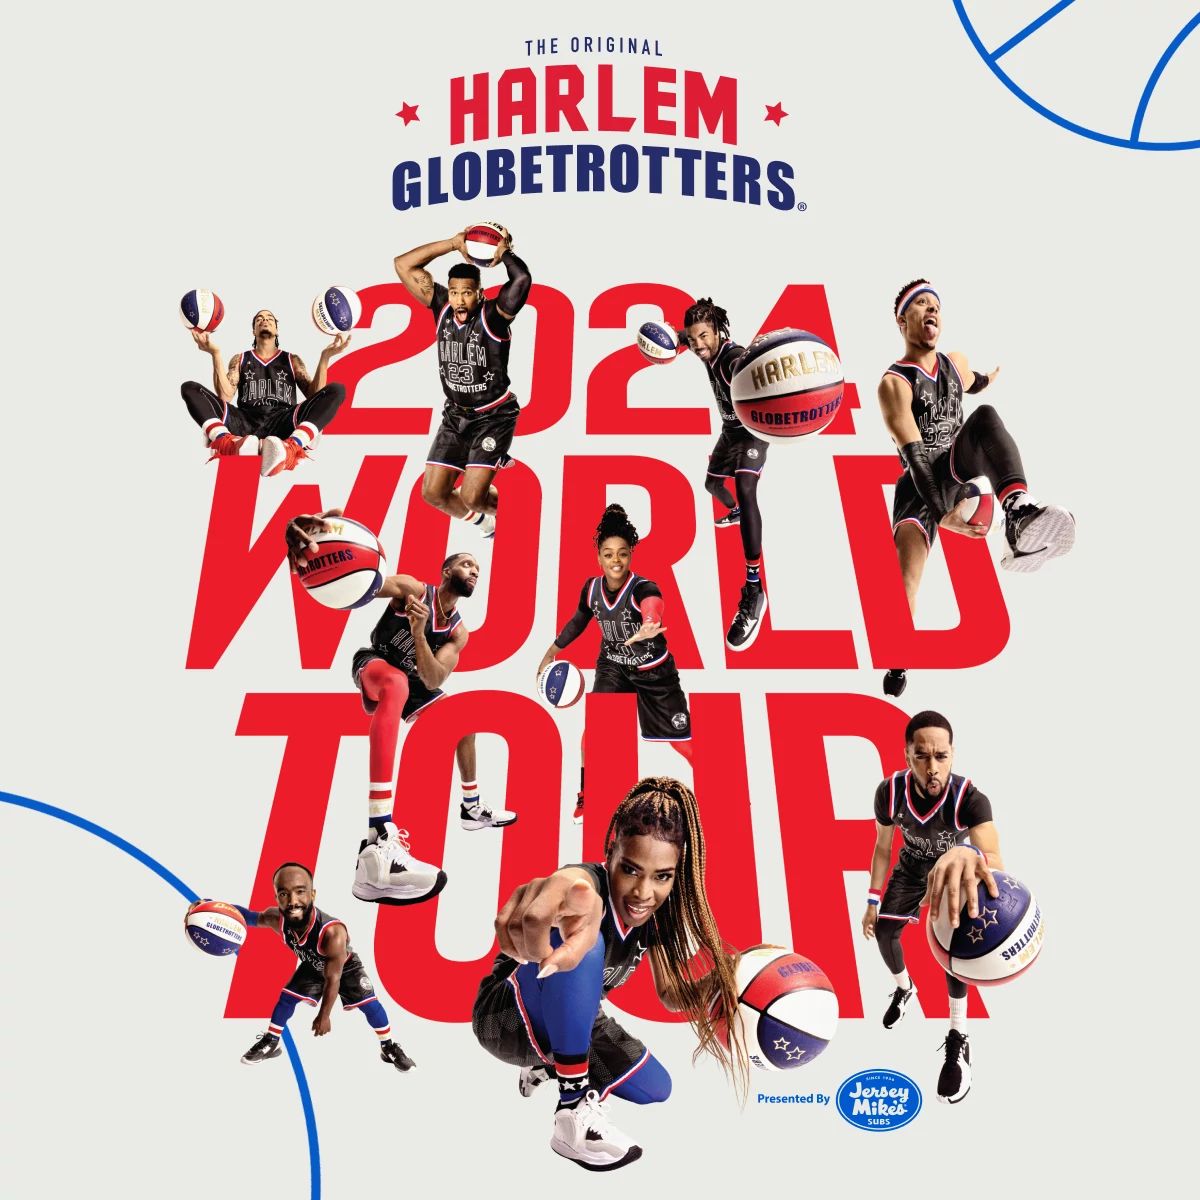 Details for Harlem Globetrotters: World Tour